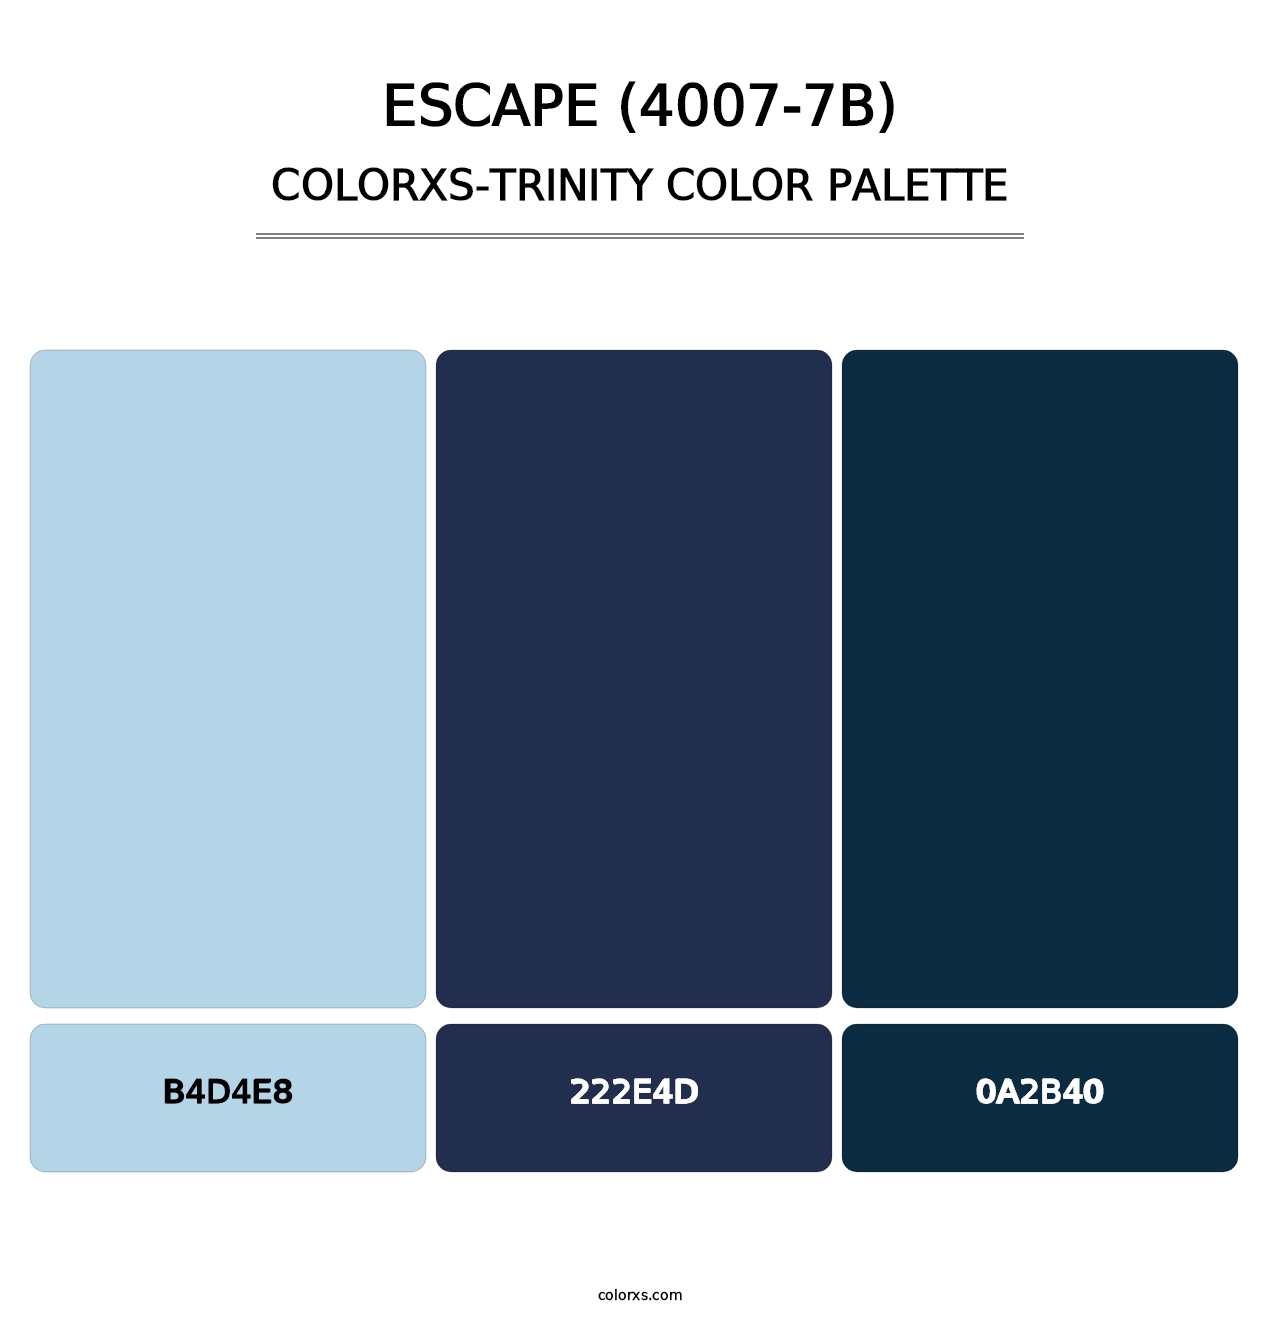 Escape (4007-7B) - Colorxs Trinity Palette